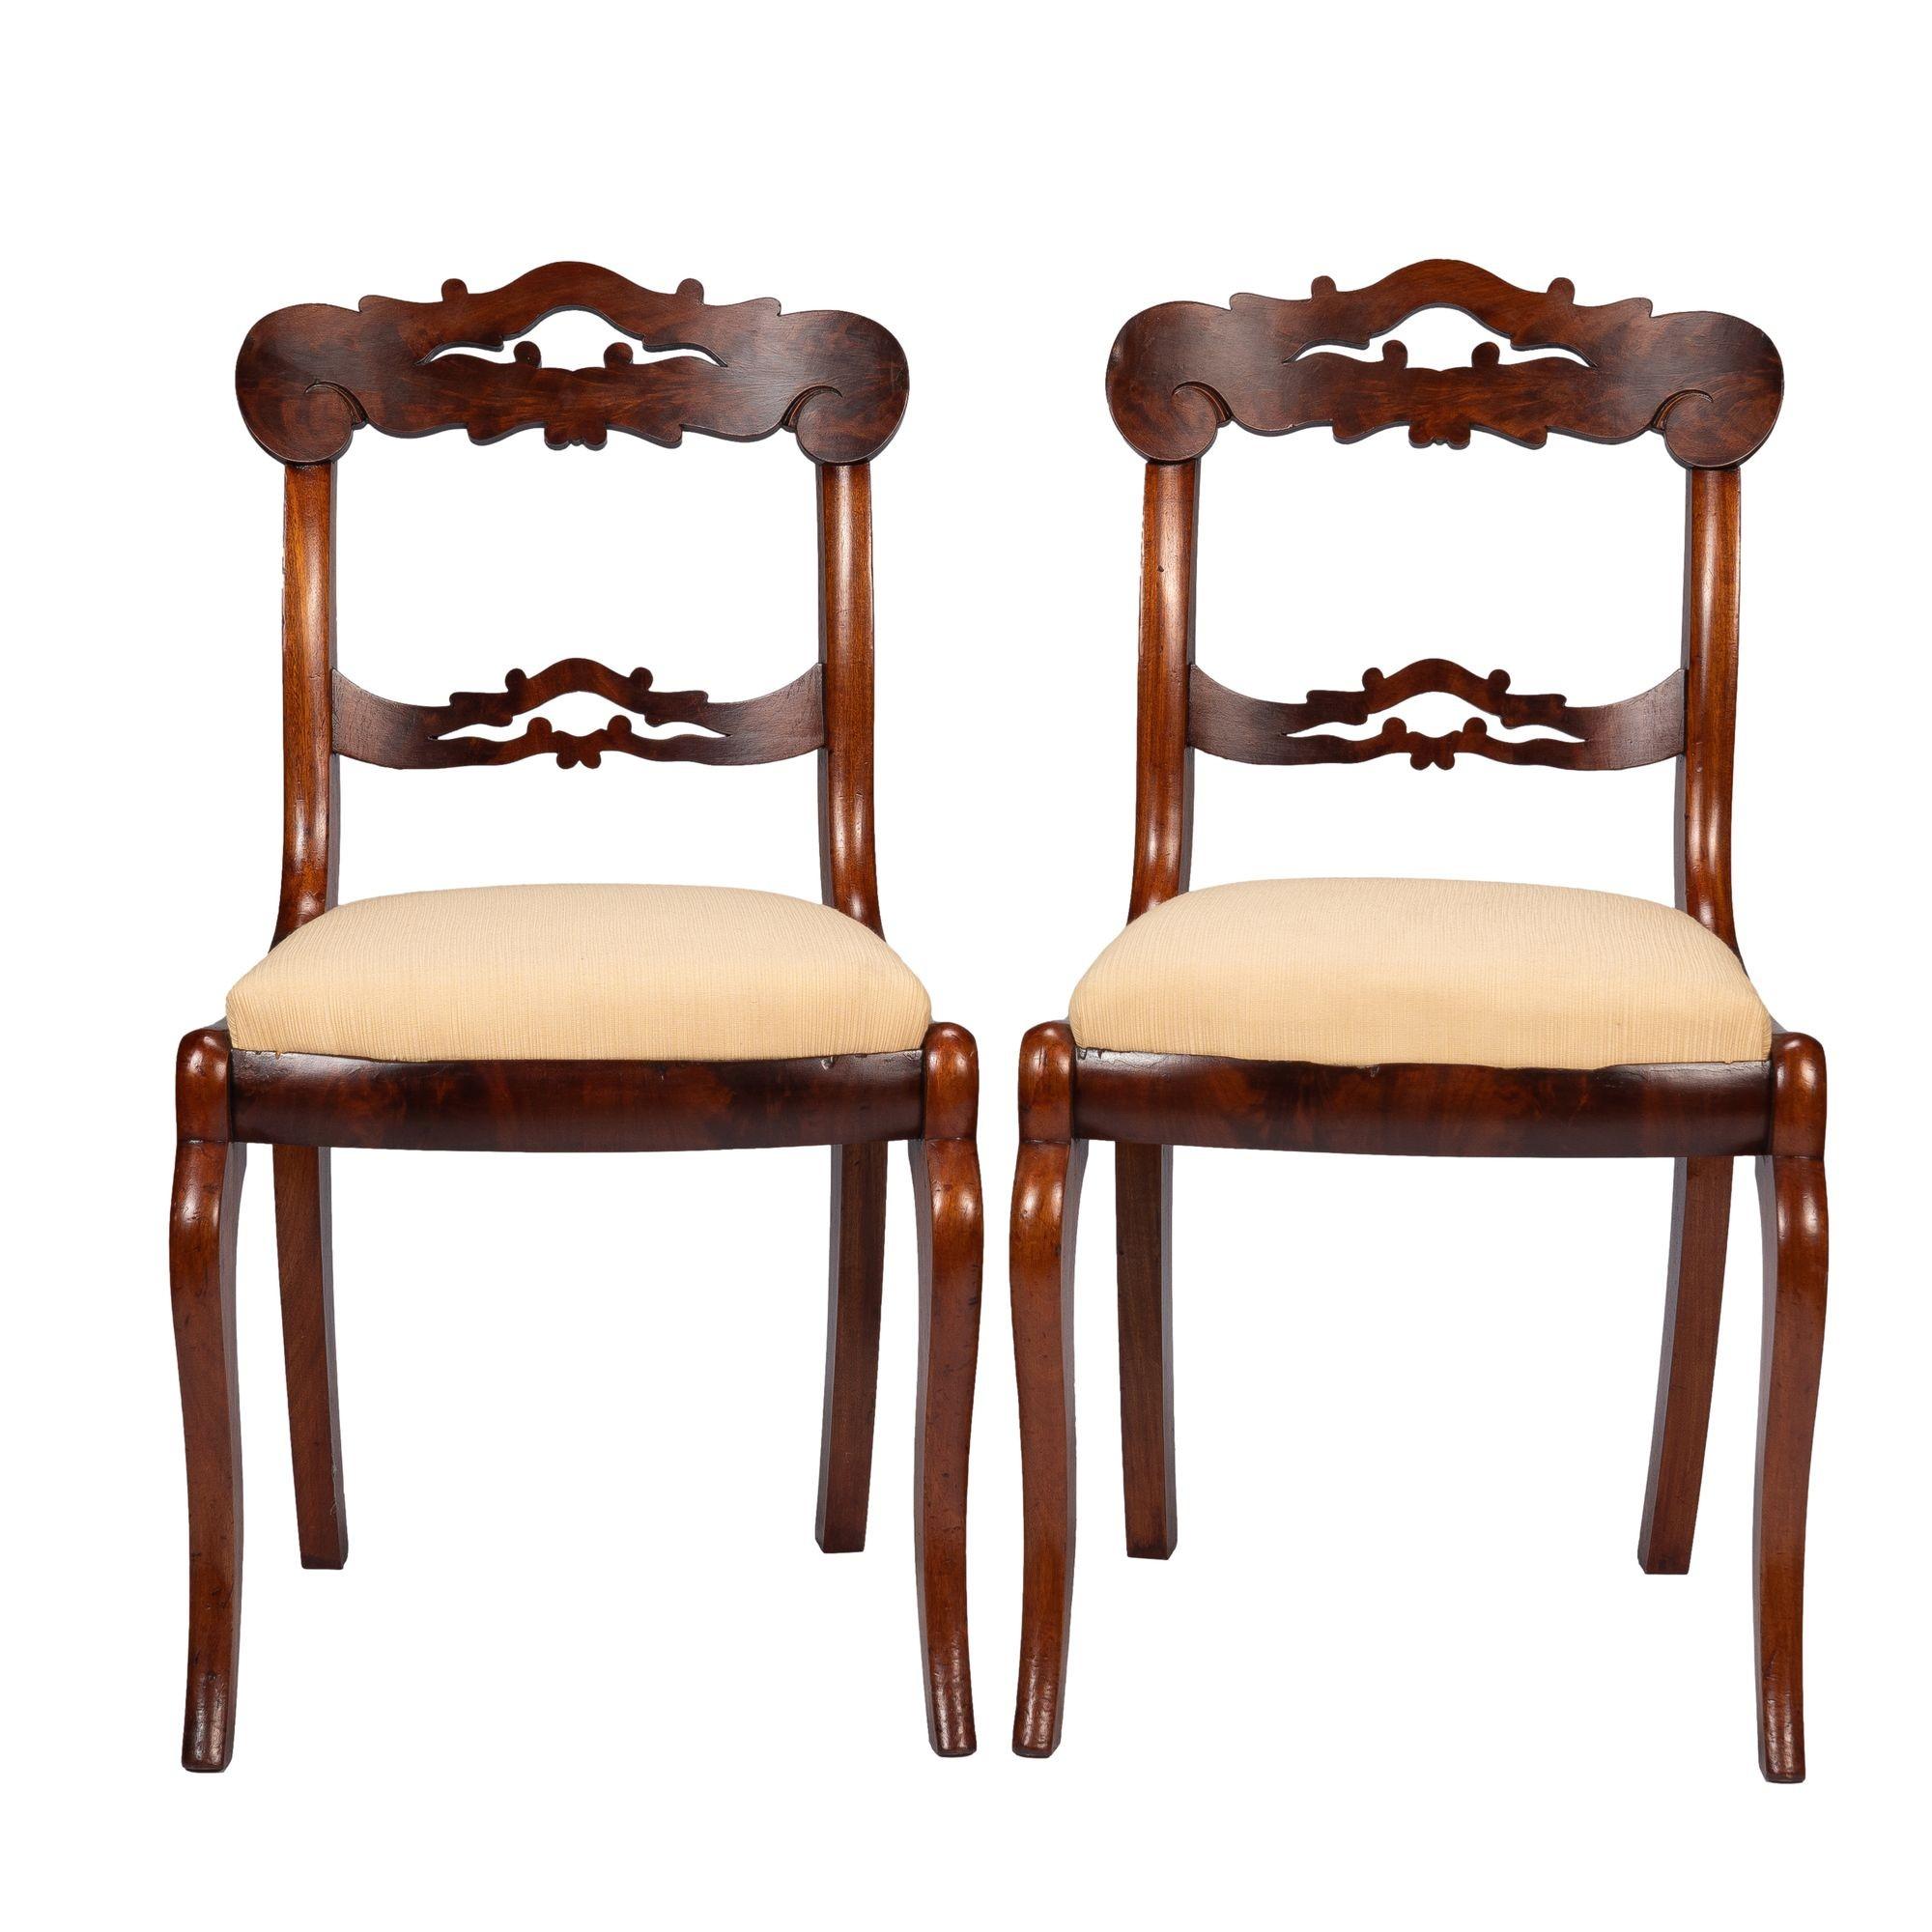 Paar amerikanische Stühle aus Mahagoni und gemasertem Mahagoni, furniert, mit gepolstertem Schlupfsitz, spätklassisch. Die Stühle haben eine geformte und durchbrochene Kammleiste und Rückenlehne. Sekundärholz Kastanie.

Amerikaner, Boston, ca.